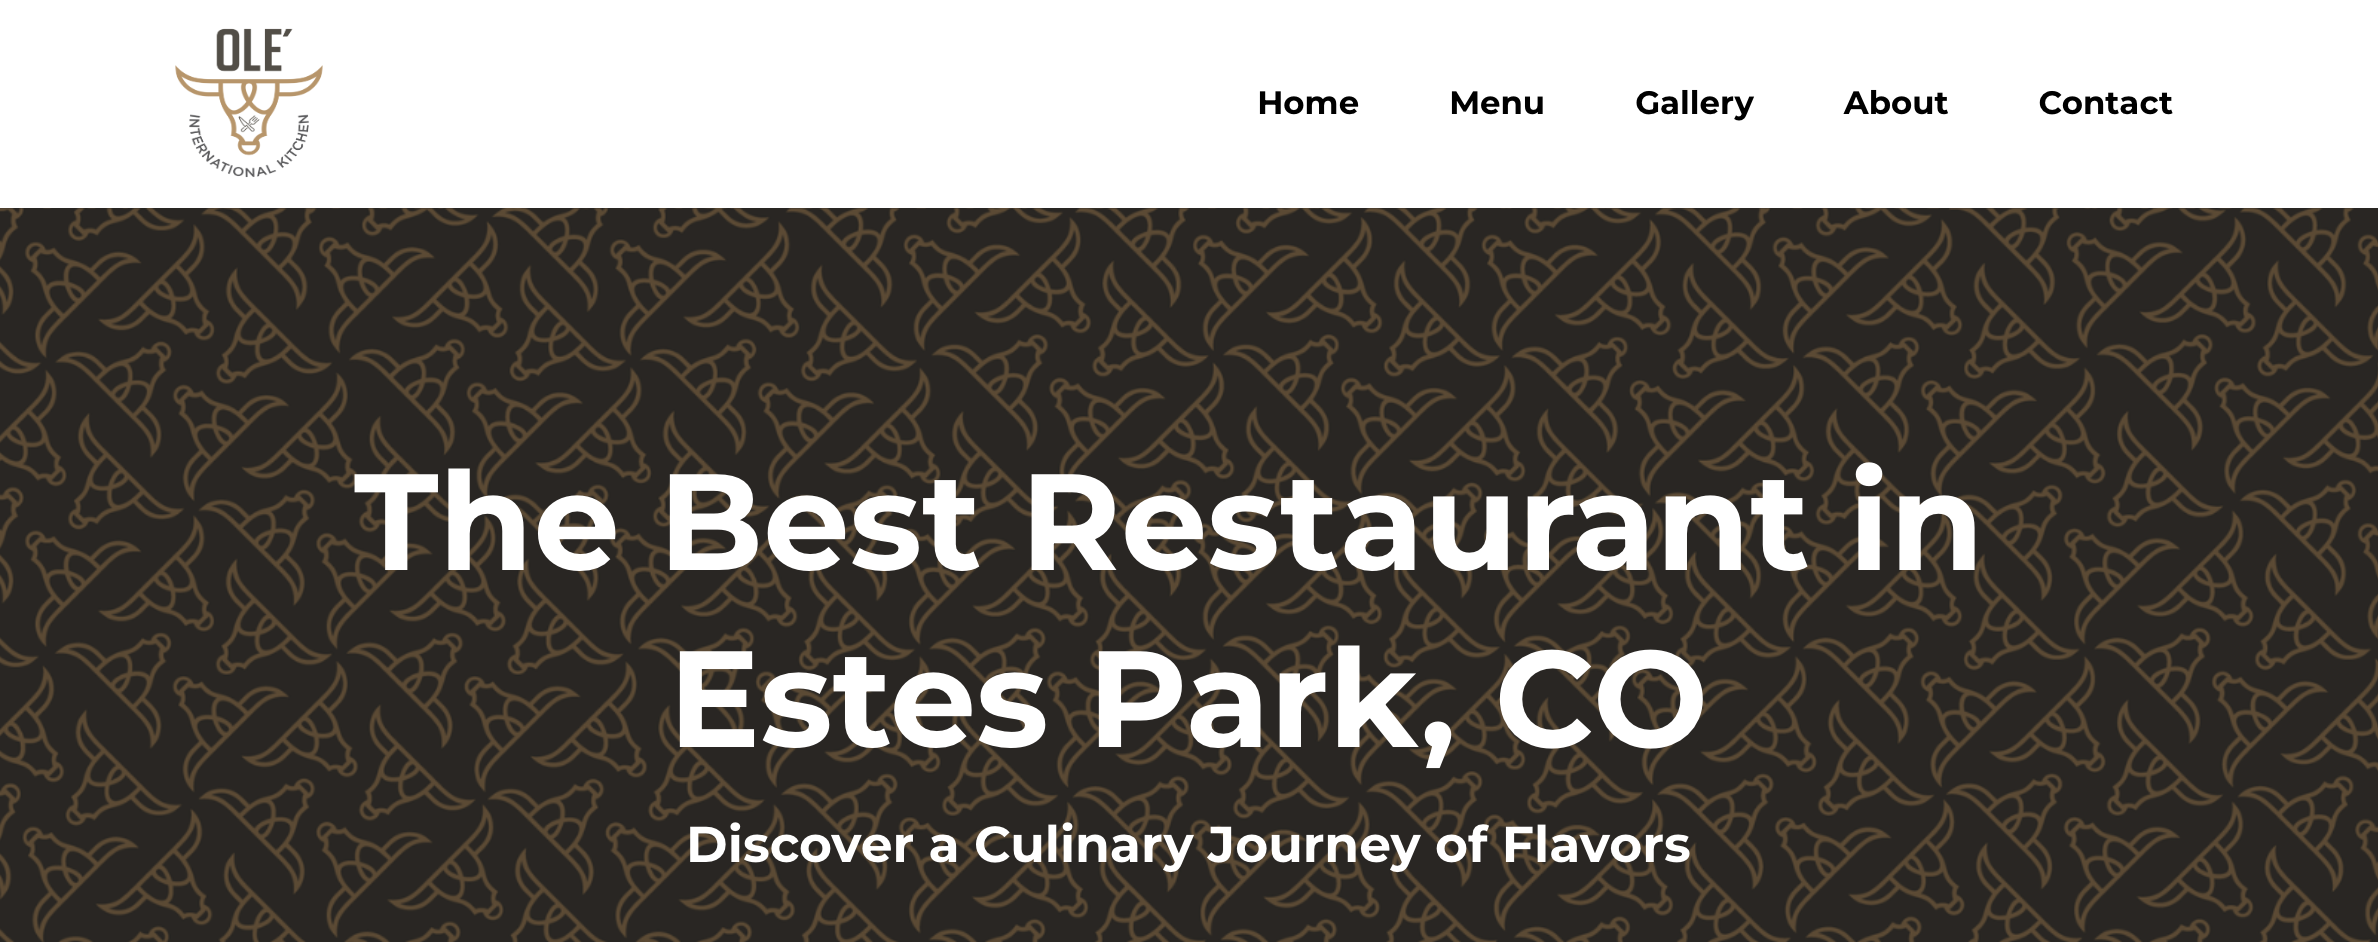 Best Restaurant in Estes Park Colorado - Ole’ International Kitchen